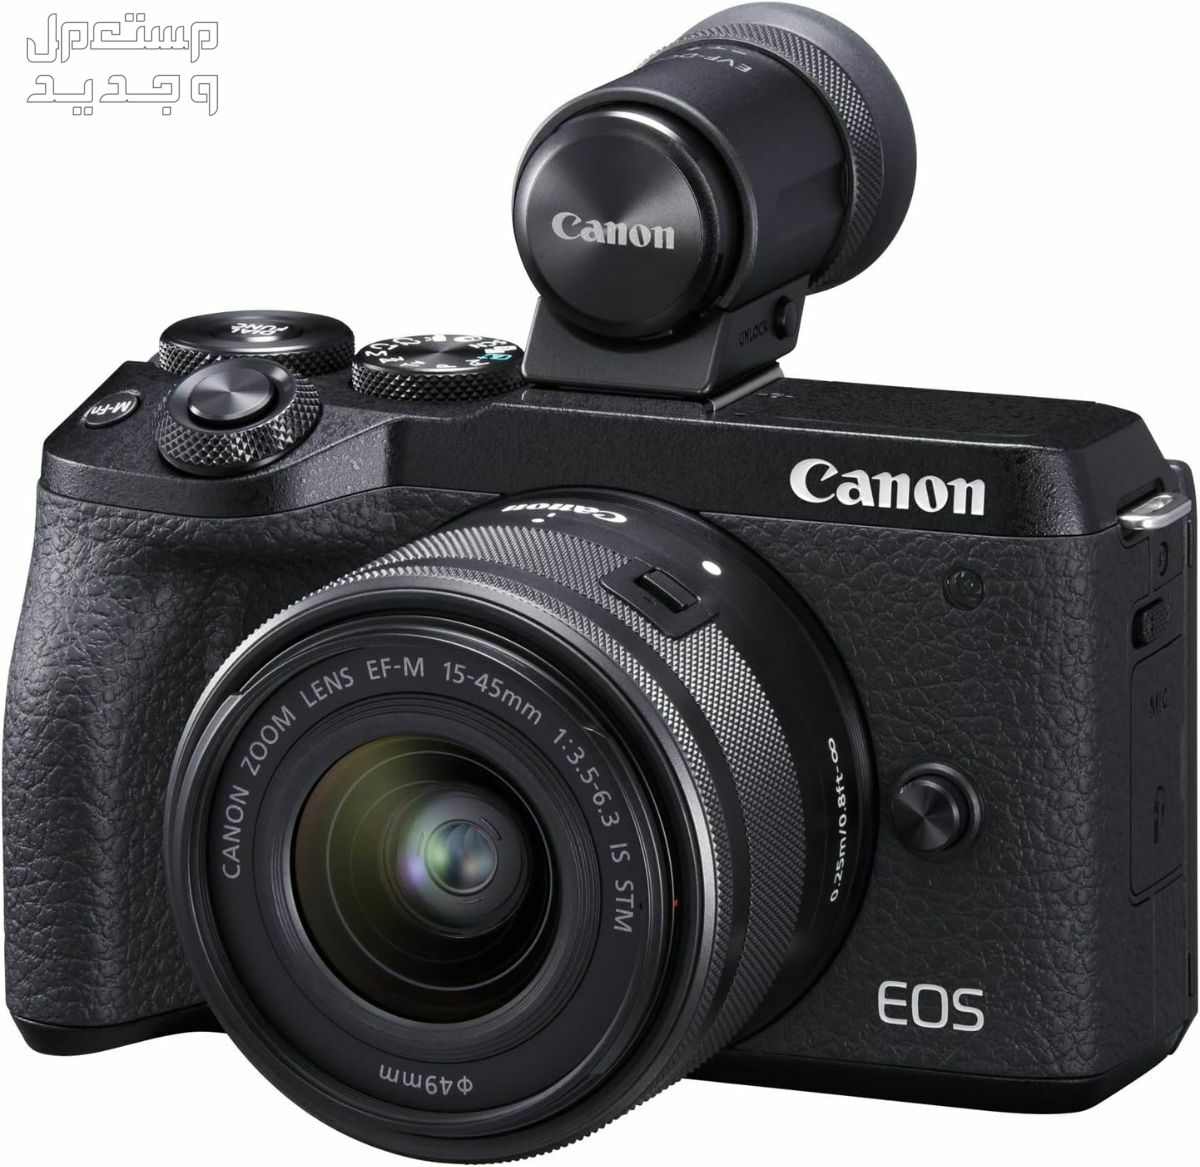 سعر ومميزات ومواصفات أرخص 5 كاميرات تصوير من كانون في ليبيا كاميرا Canon EOS M6 Mark II